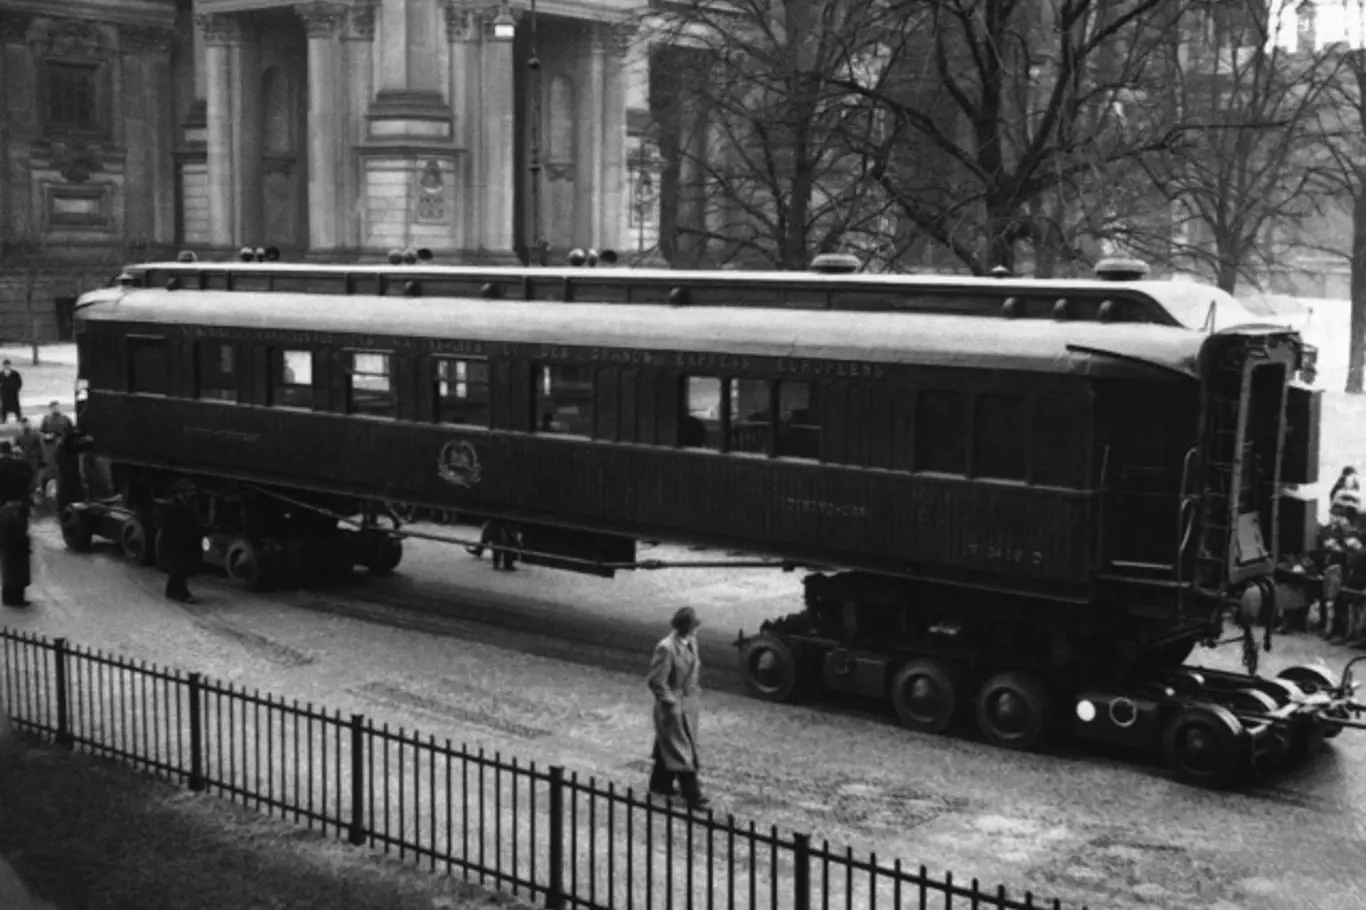 Legendární vagon, v němž byla v roce 1918 podepsána kapitulace Německa a v roce 1940 kapitulace Francie. Hitler jej později nechal vyhodit do povětří